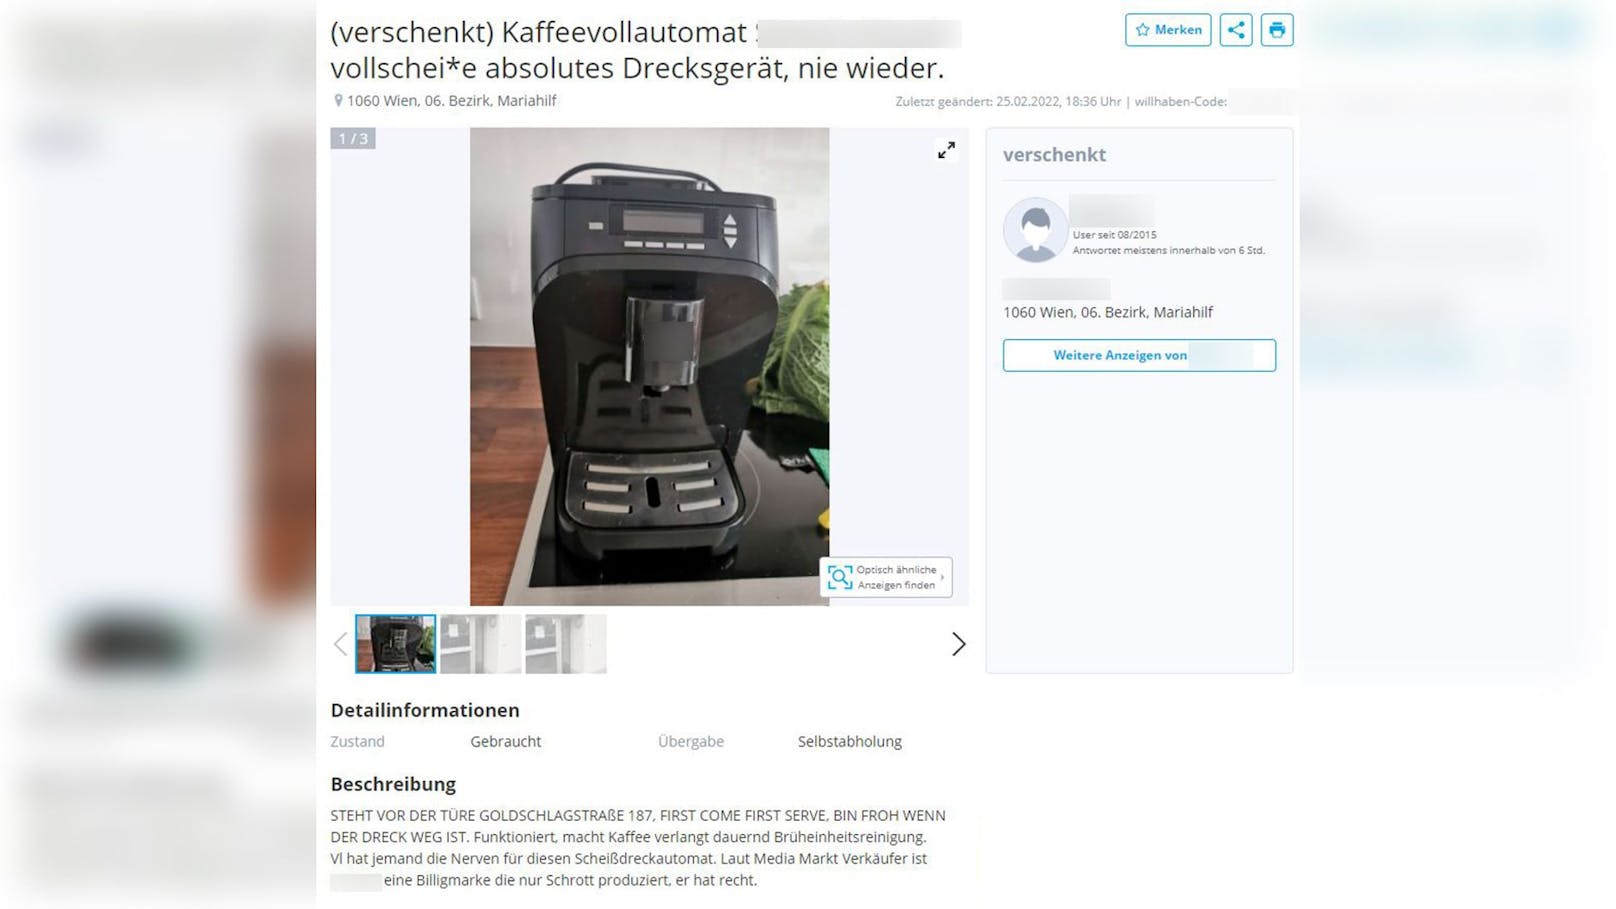 27.02.2022: Harte Worte für den Kaffeevollautomat – <a href="https://www.heute.at/s/wut-wiener-will-drecks-kaffeemaschine-loswerden-100192612">Weiterlesen &gt;&gt;&gt;</a>